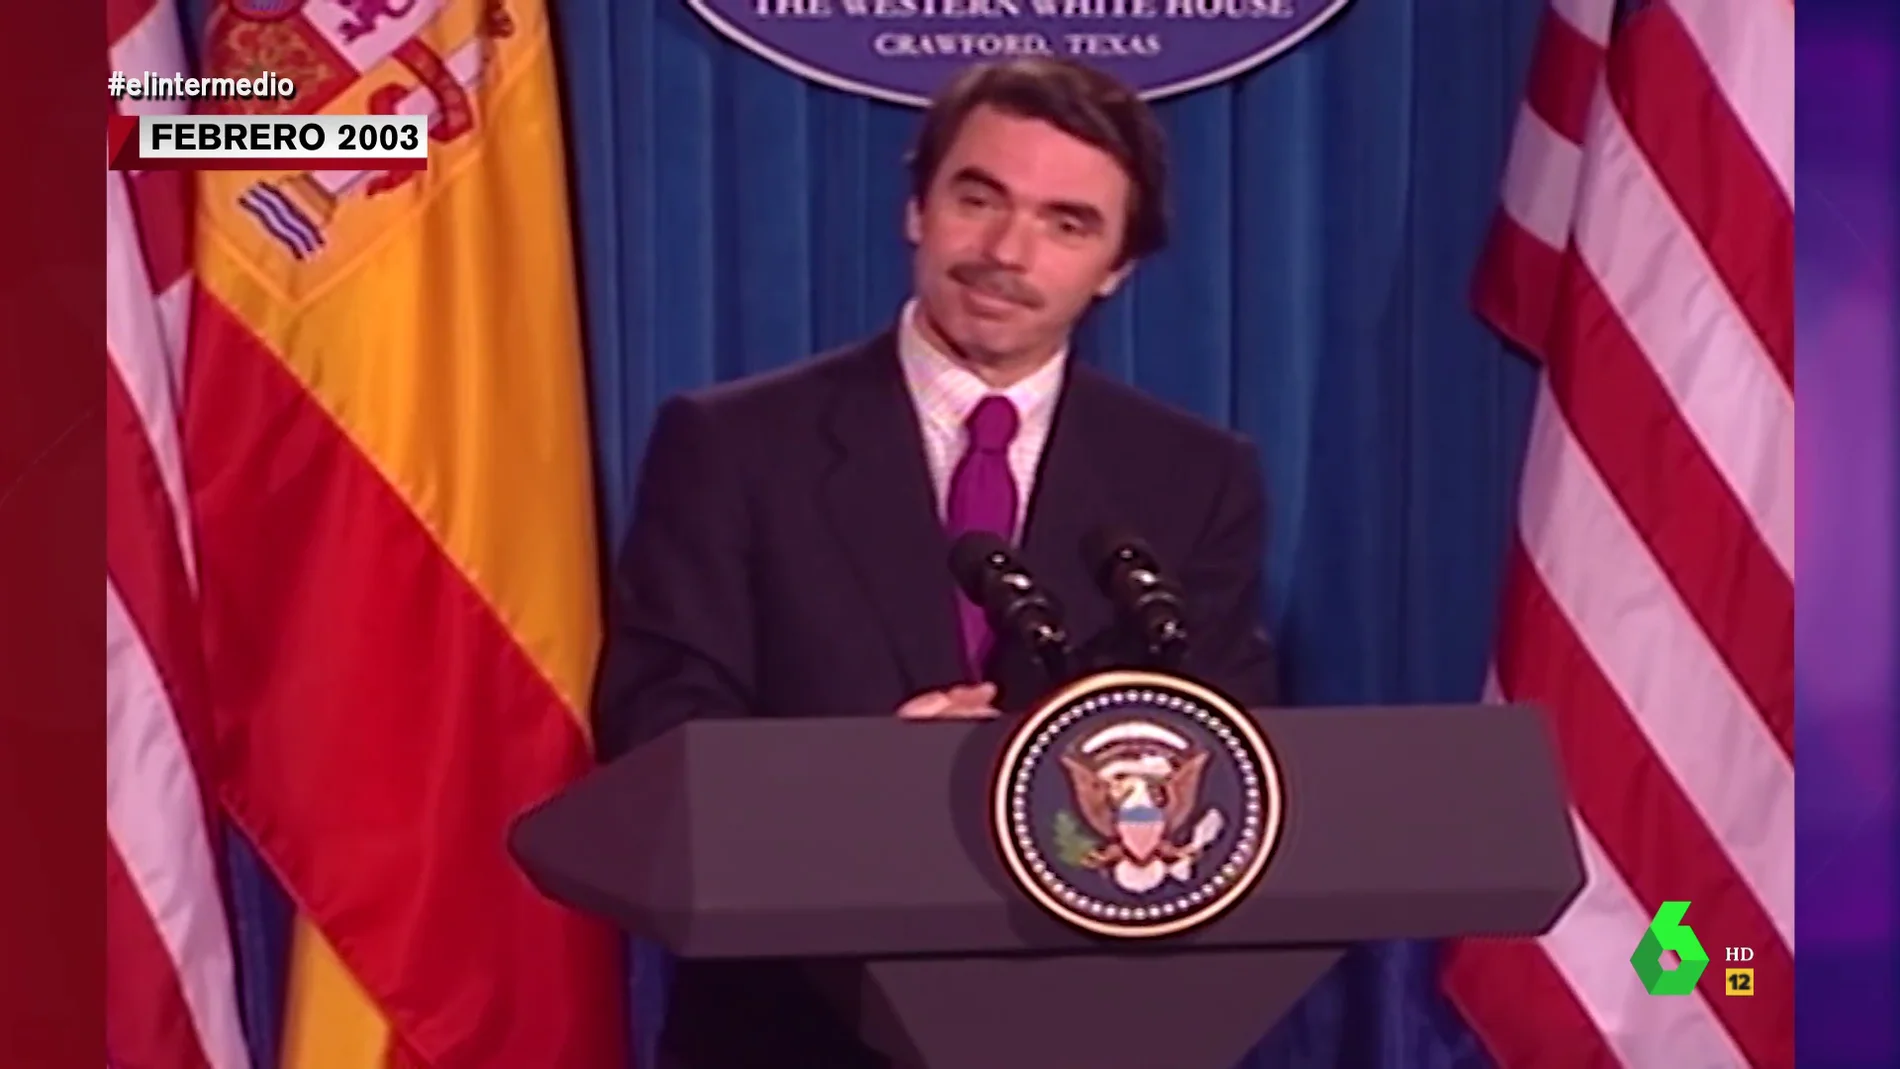 El increíble acento tejano de Aznar en 2003 al dar una comparecencia en México